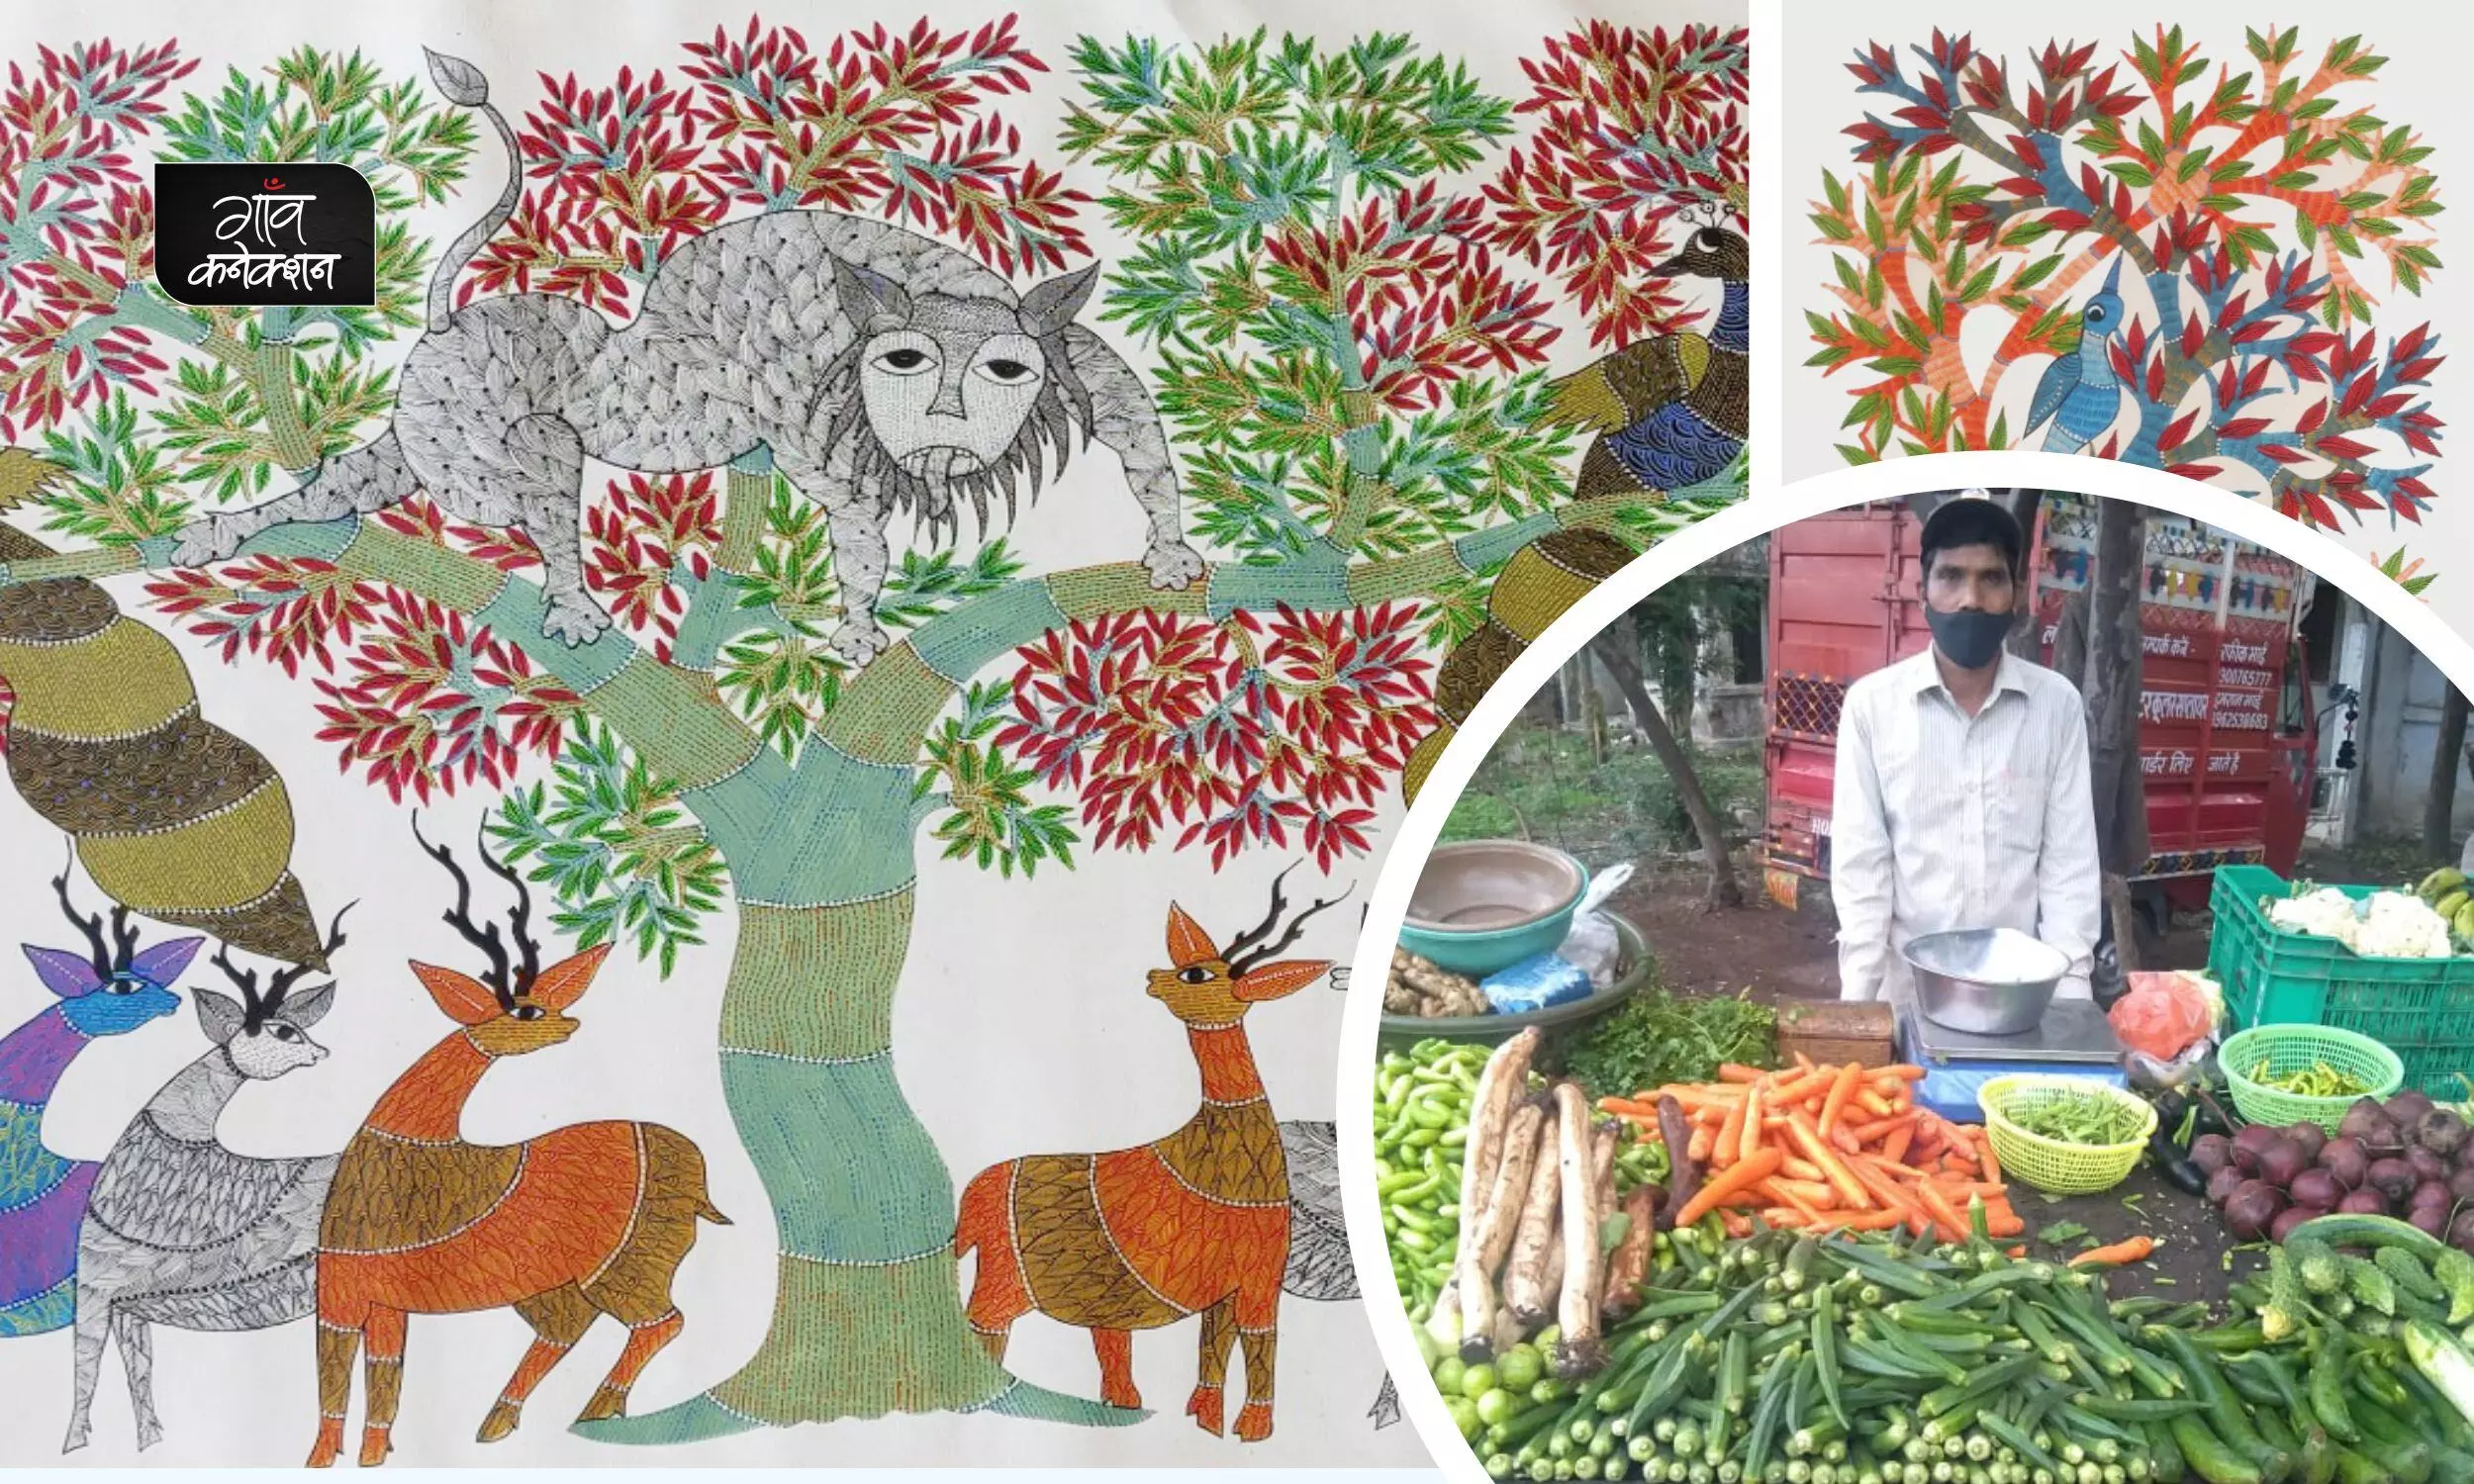 दिहाड़ी मजदूरी, सब्जी बेचने और मनरेगा में मजदूरी करने को मजबूर हैं मध्य प्रदेश के गोंड कलाकार